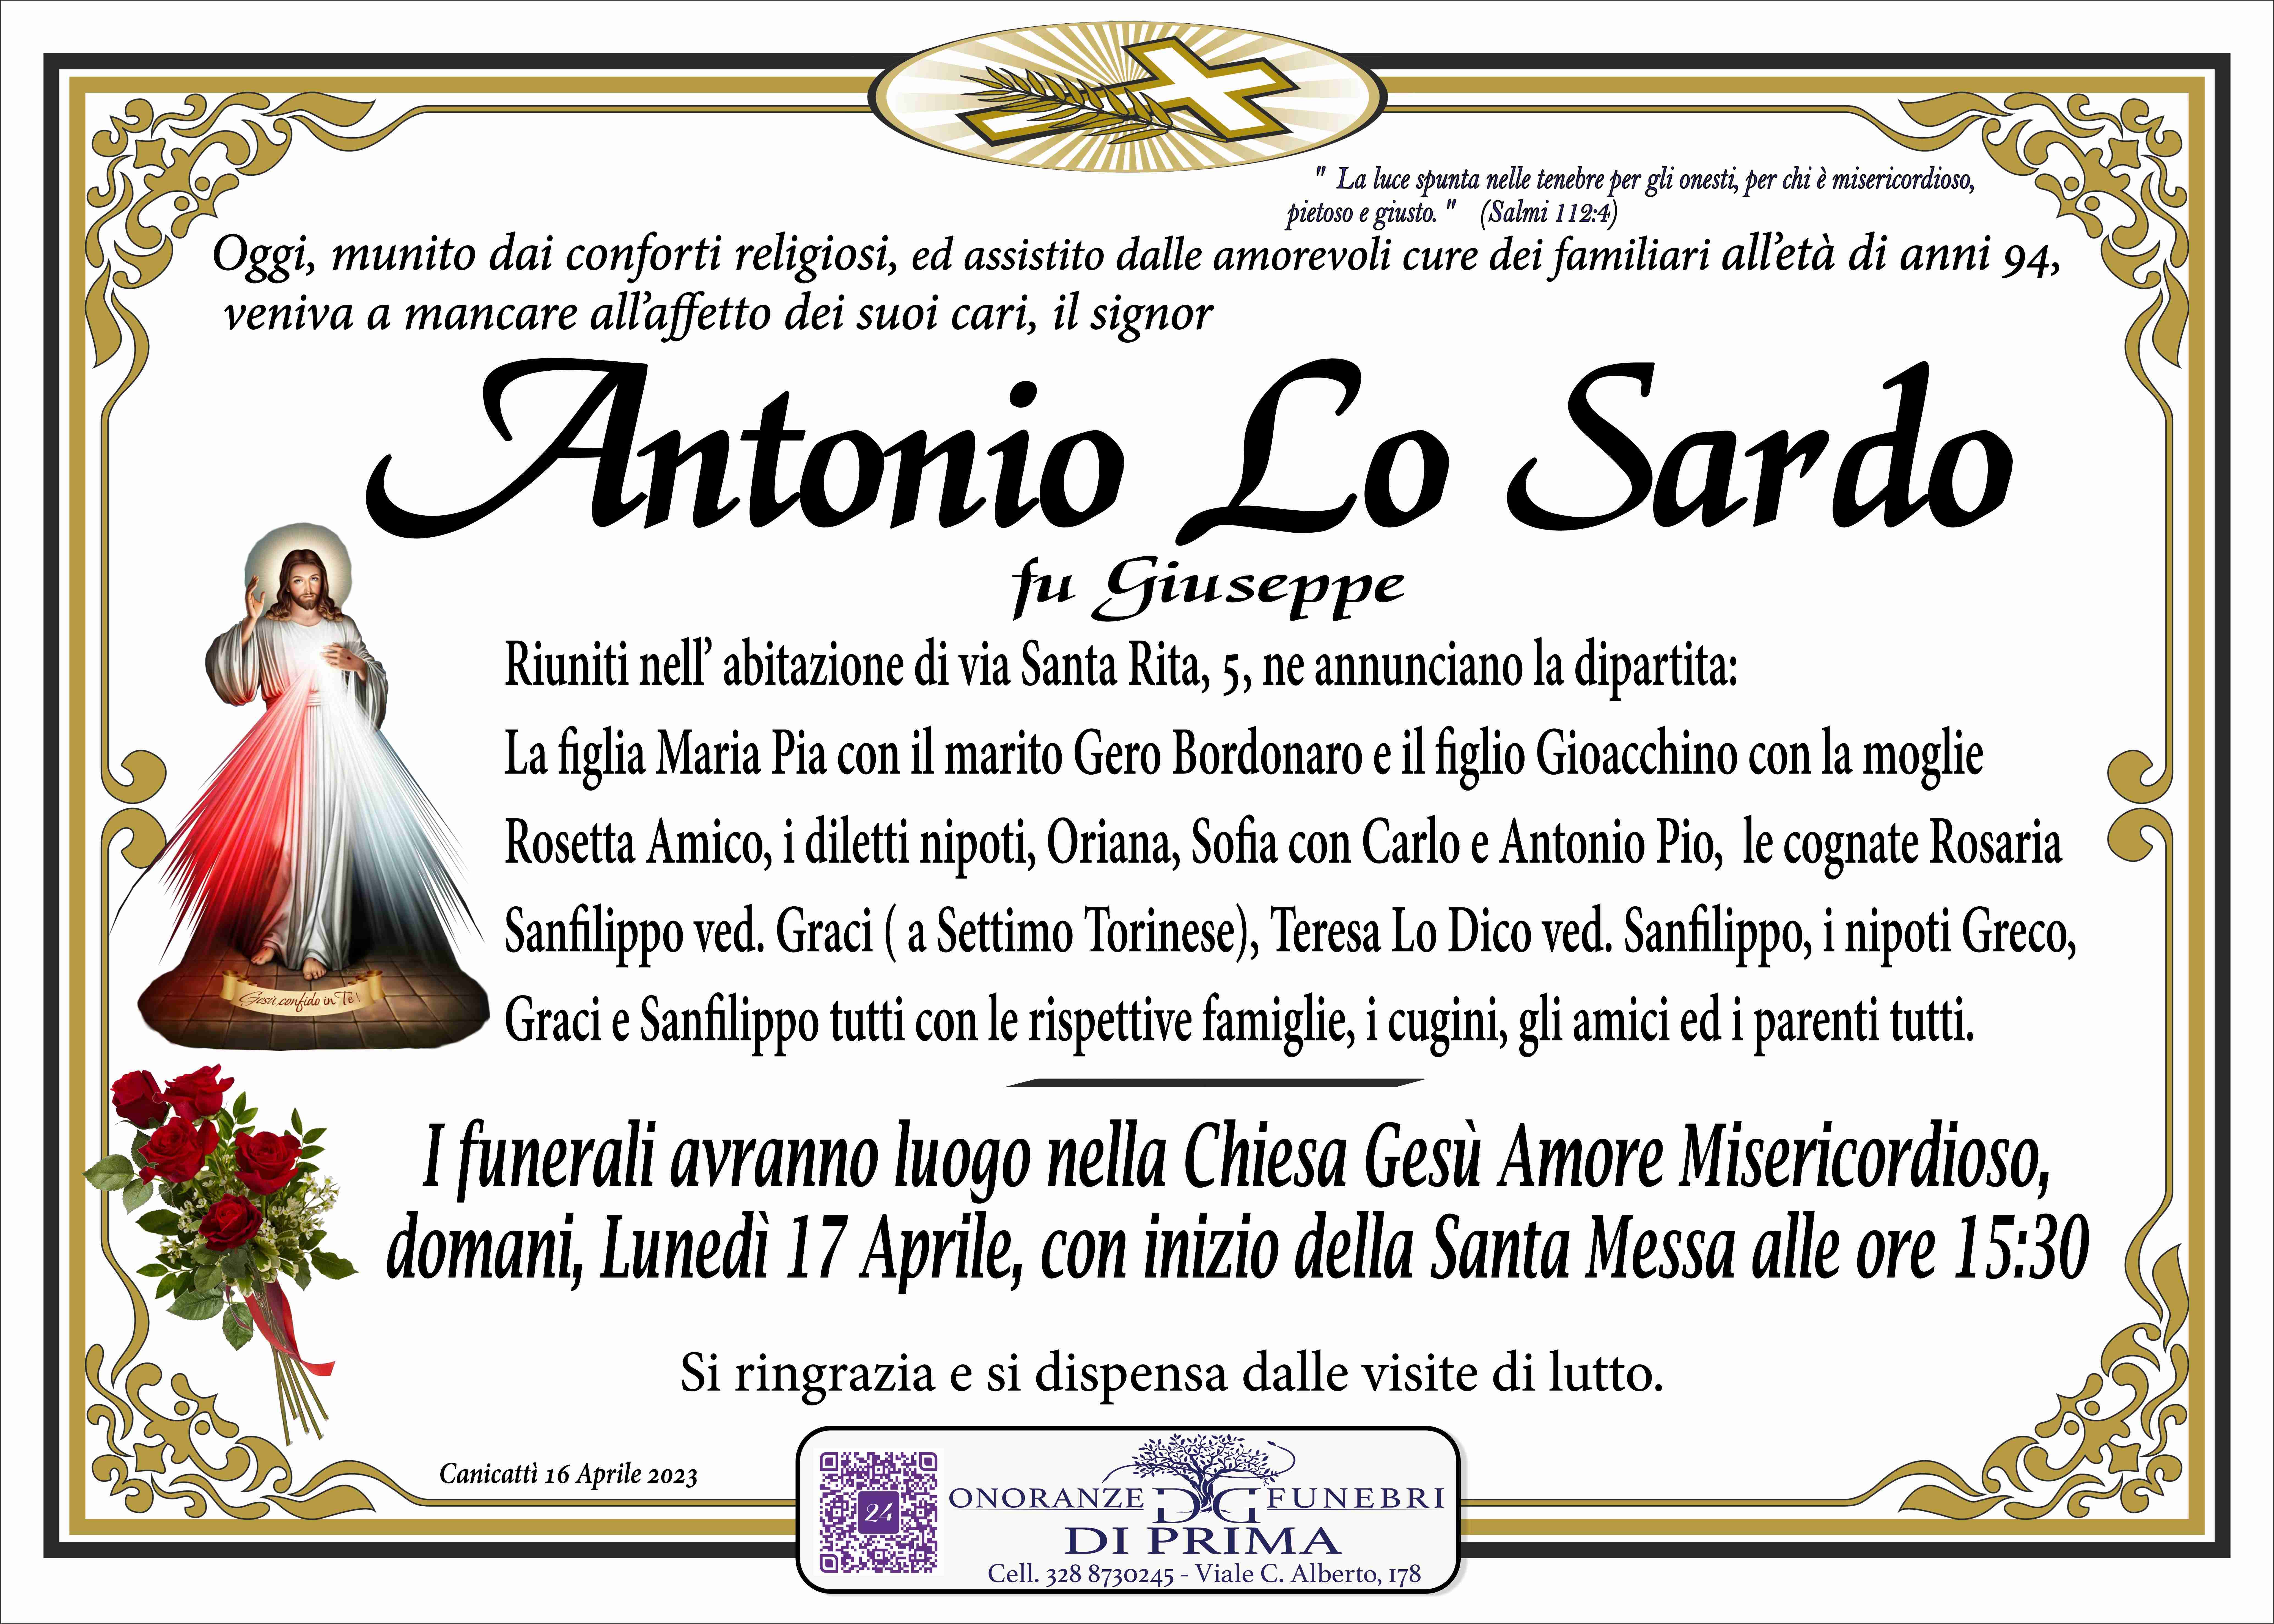 Antonio Lo Sardo